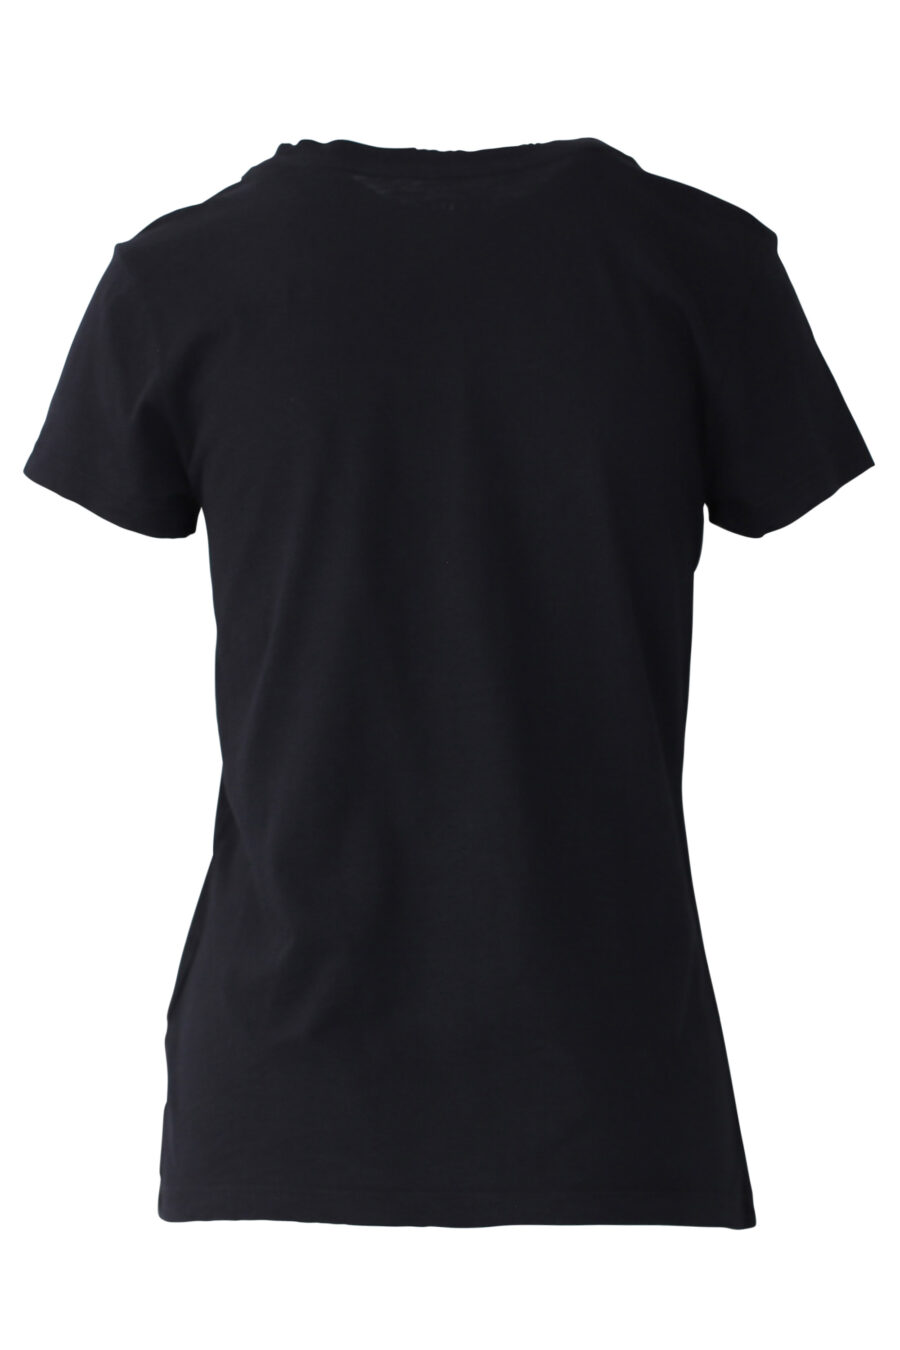 Camiseta negra con maxilogo bordado en strass - IMG 0662